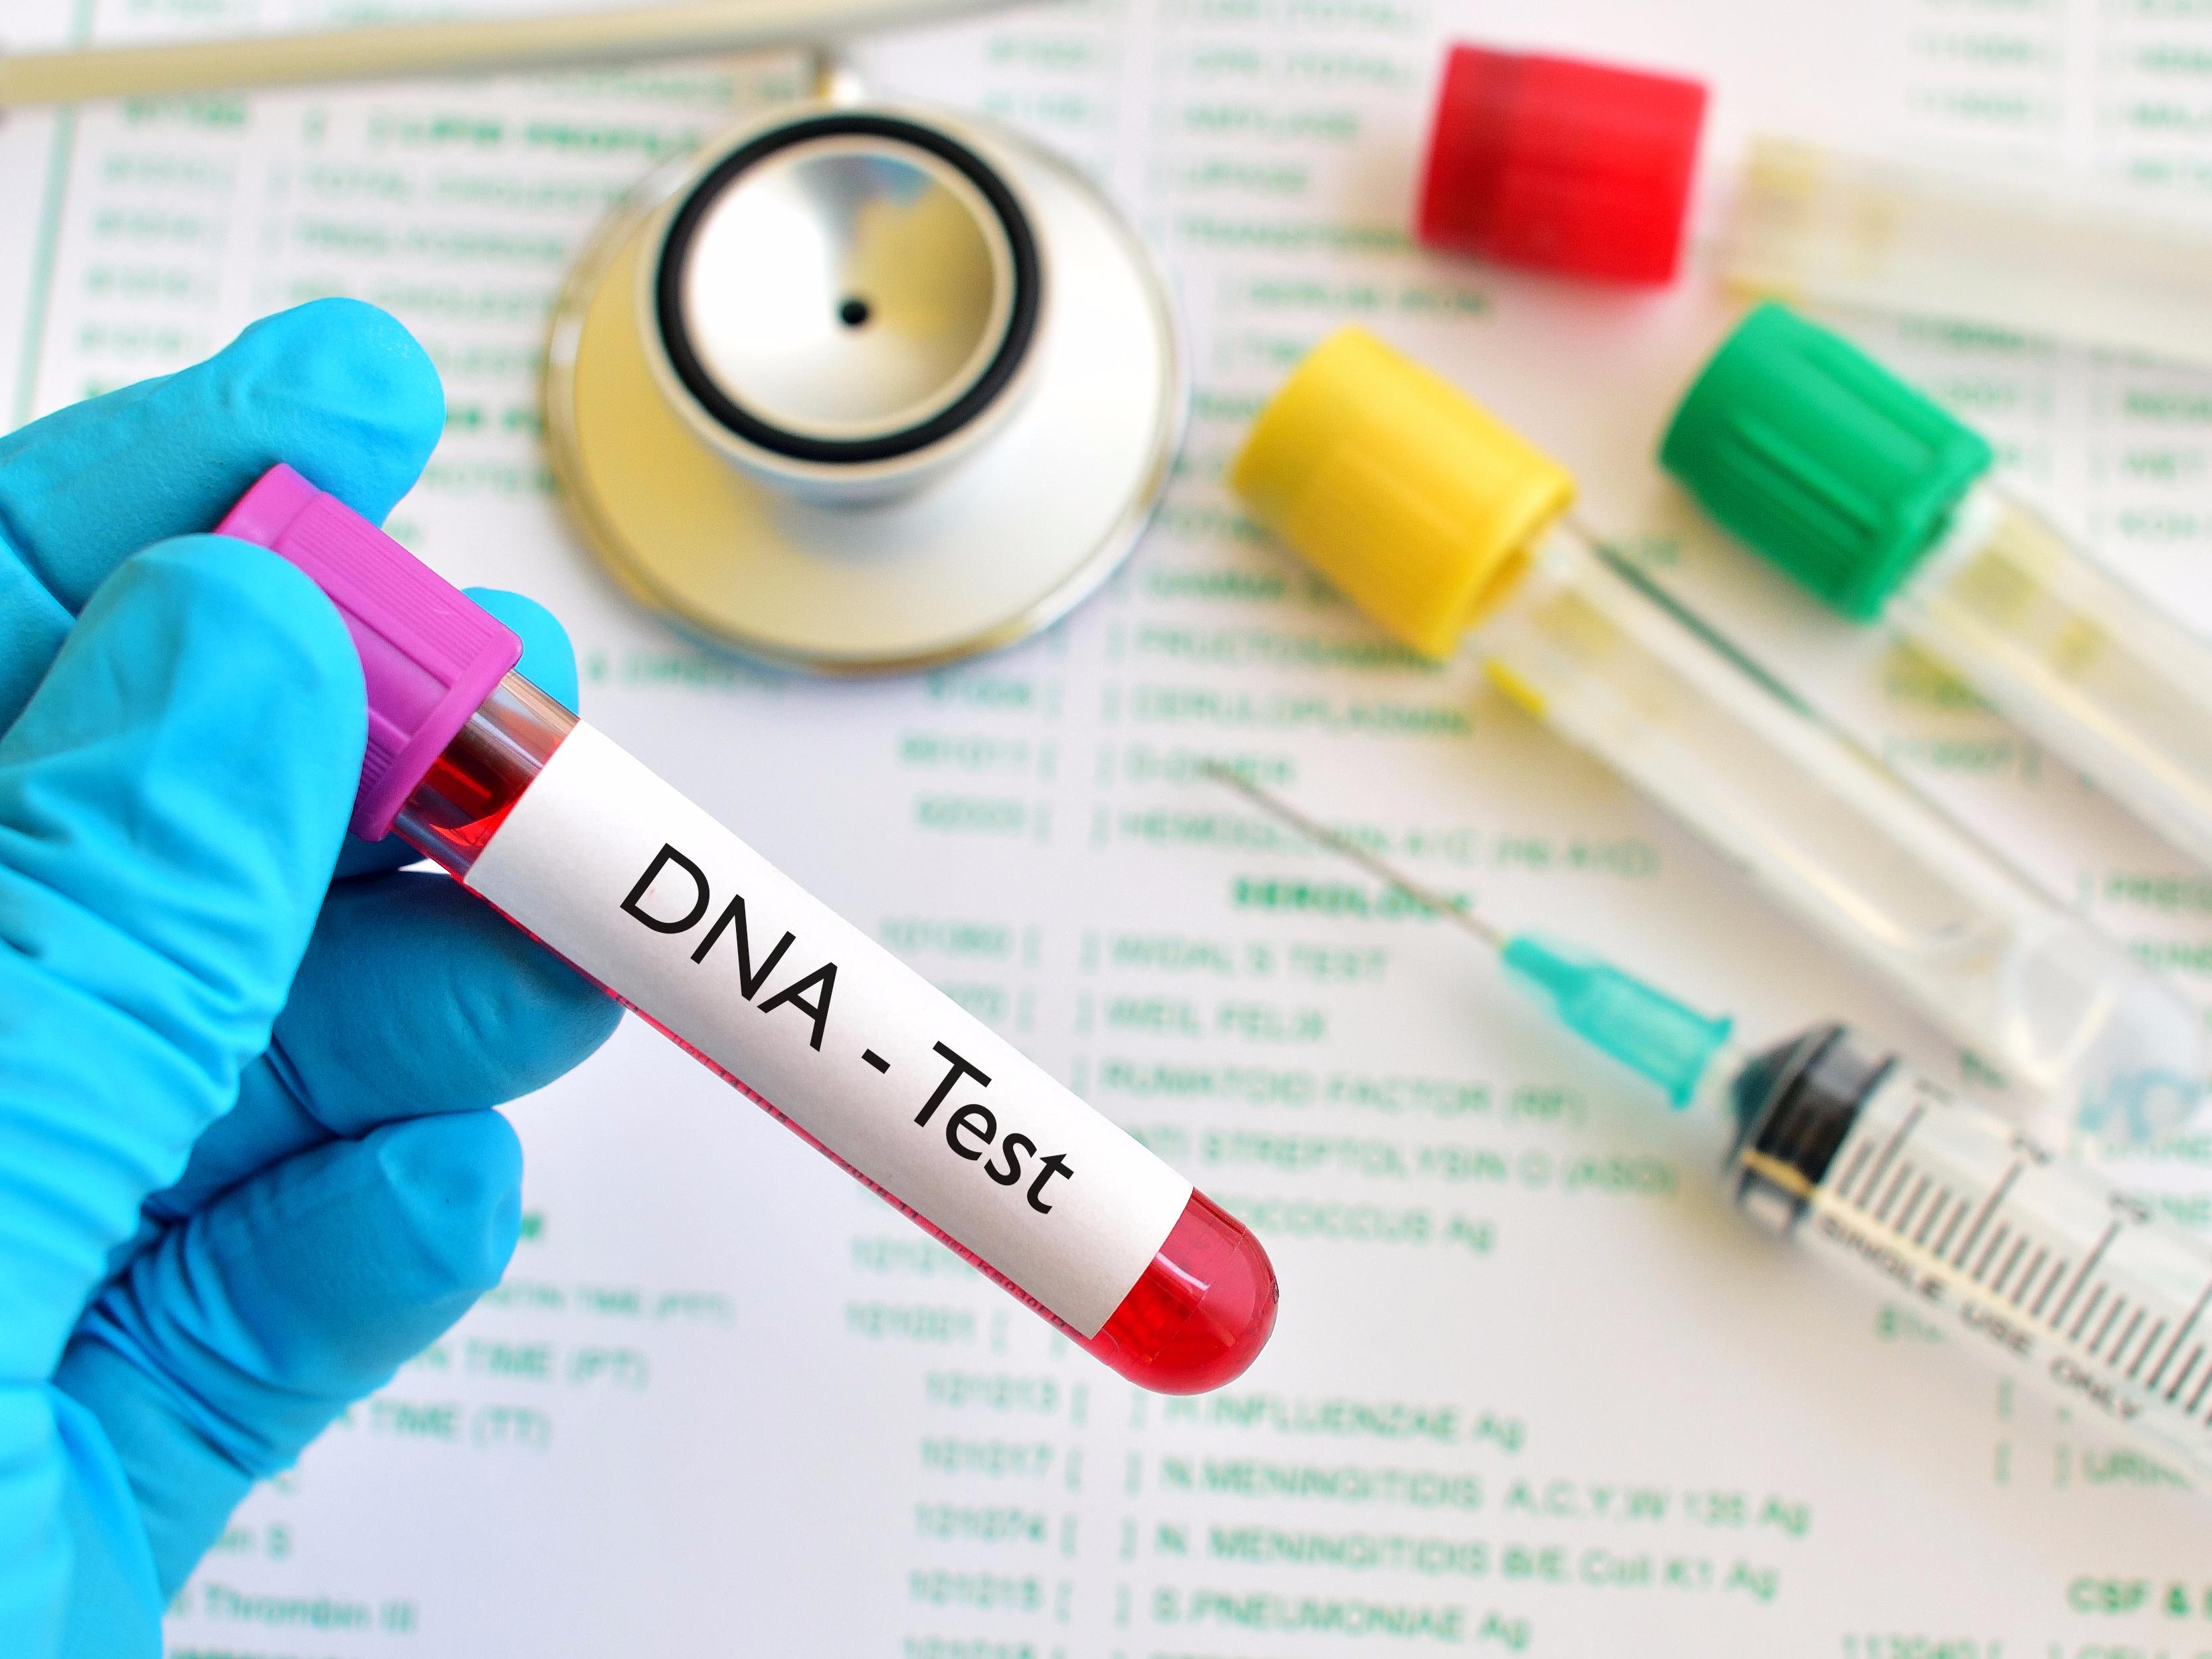 DNK testovi koje možete koristiti kod kuće sve su popularniji - Avaz